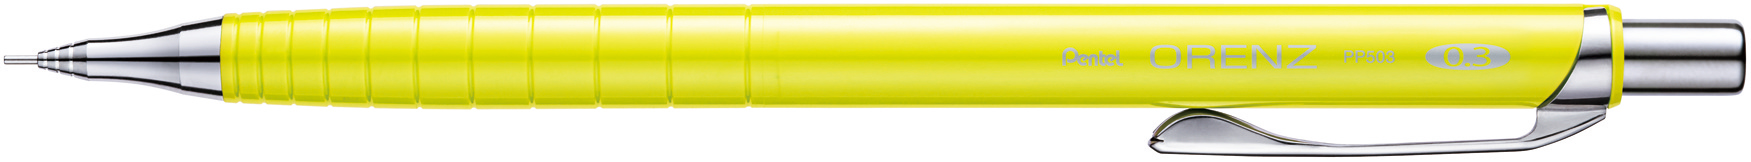 Карандаш механический Pentel Orenz PP503-G желтый корпус 0,3мм